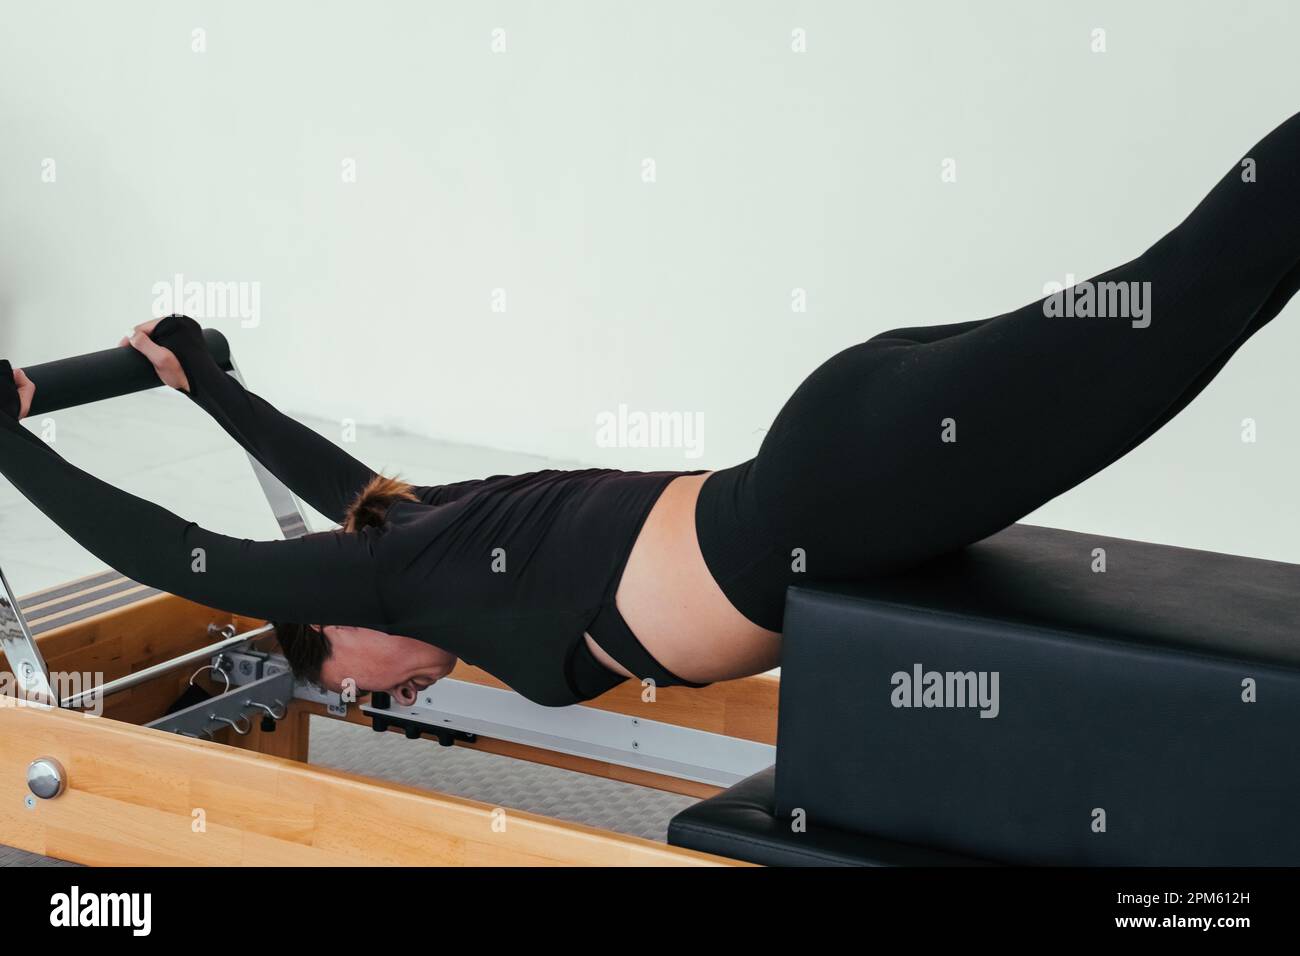 Woman doing Pilates on reformer bed. Pilates reformer, girl doing backbends. Stock Photo